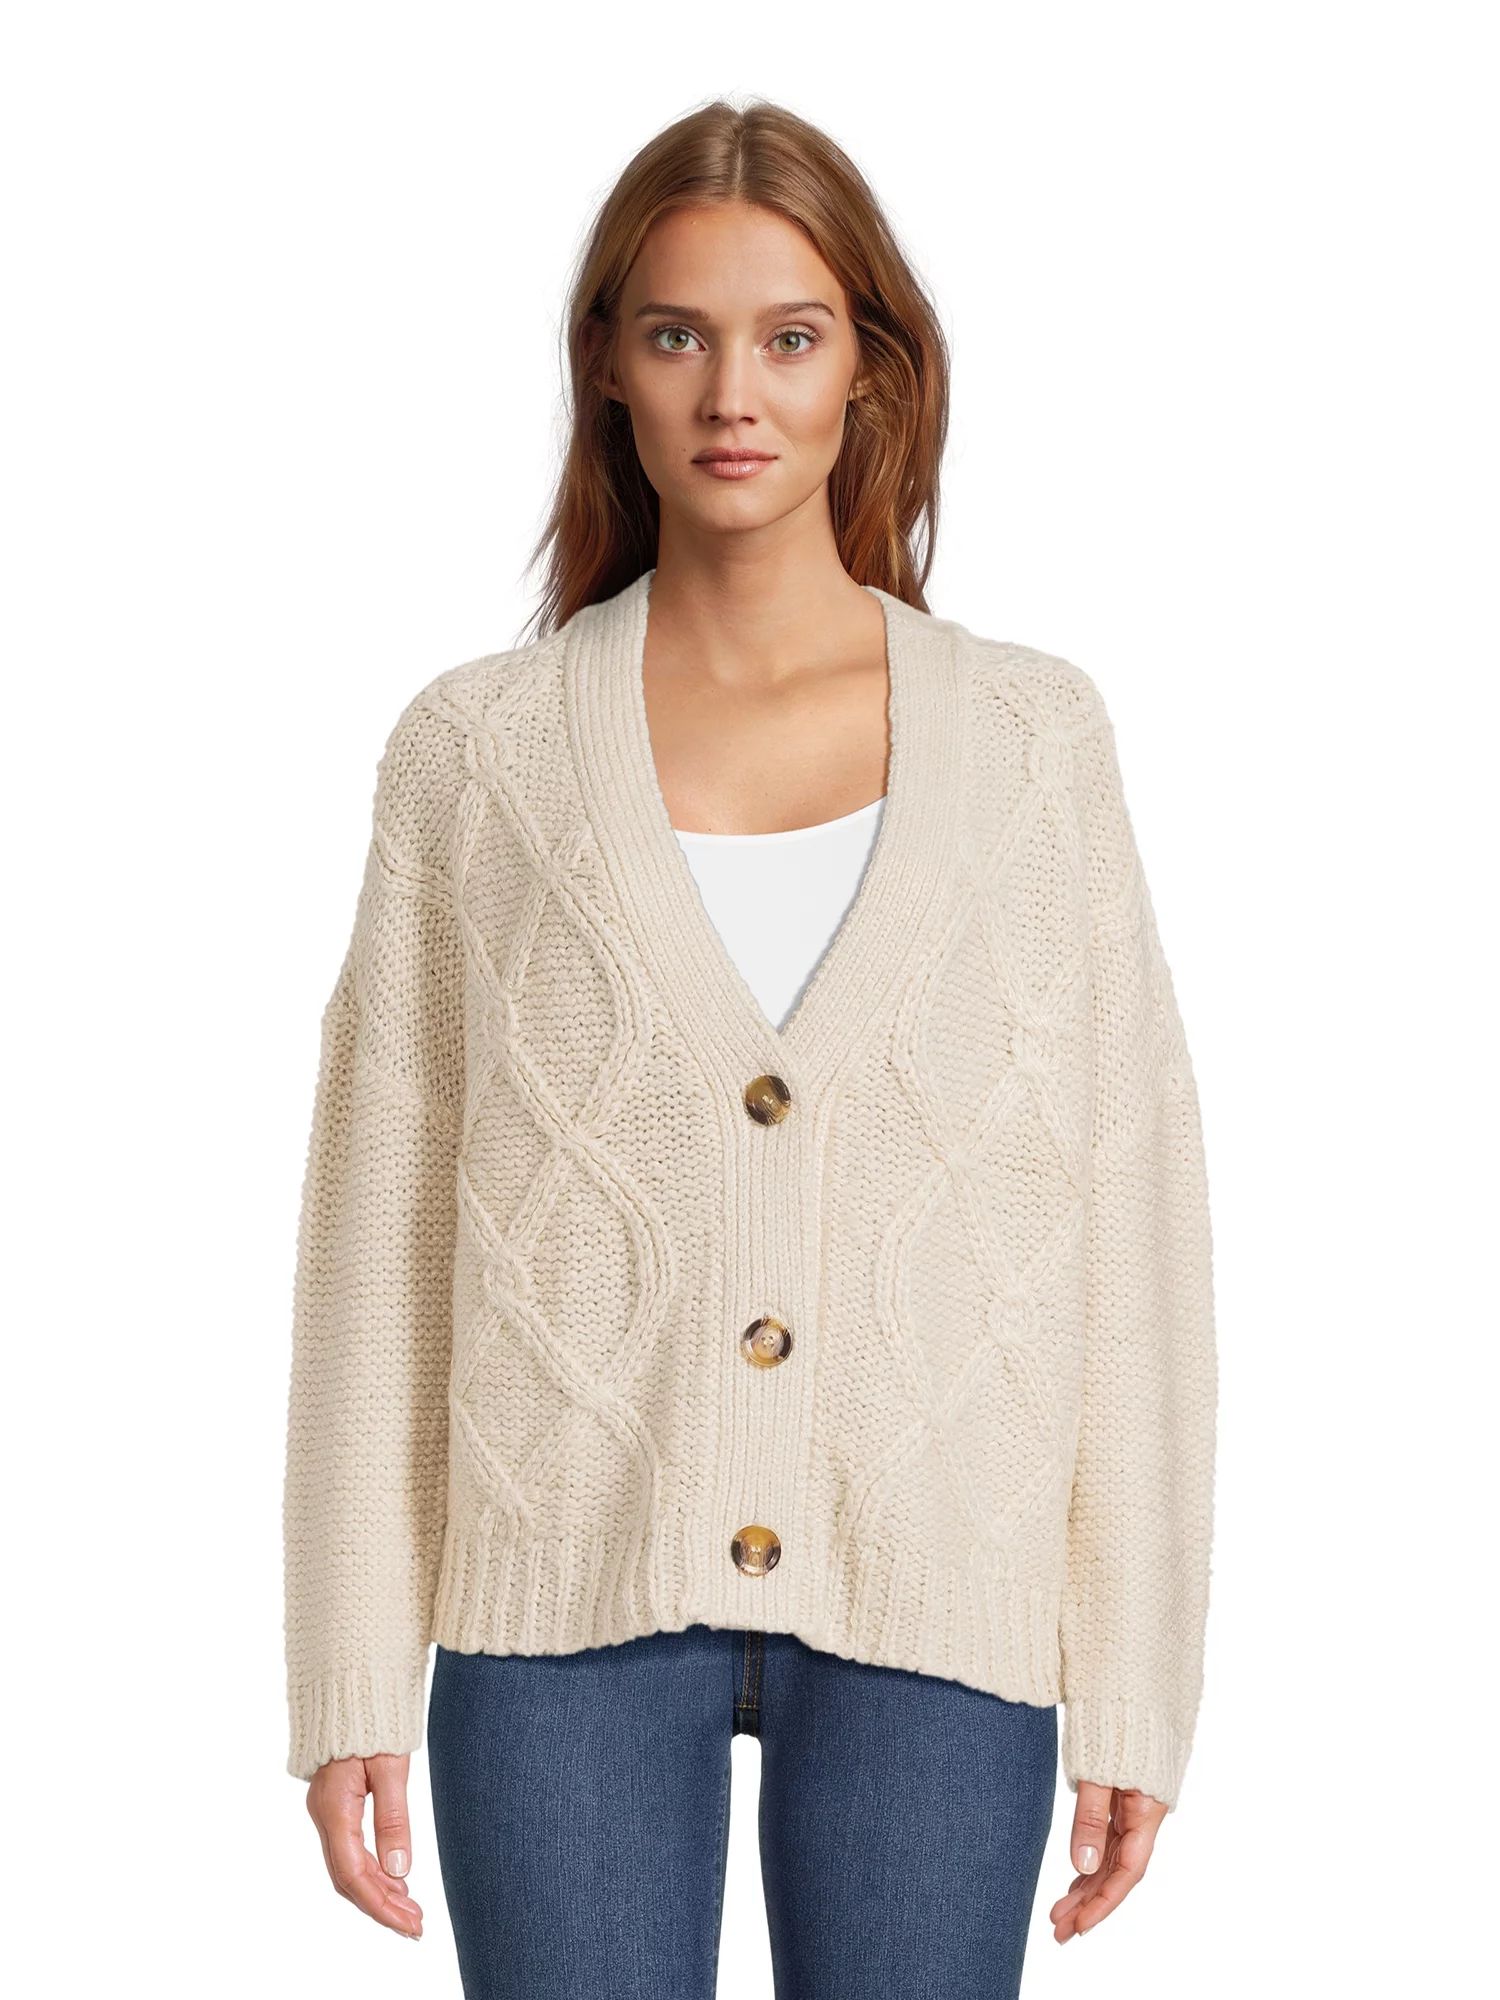 RD Style Women's Diamond Knit Cardigan, Sizes S-XXXL | Walmart (US)